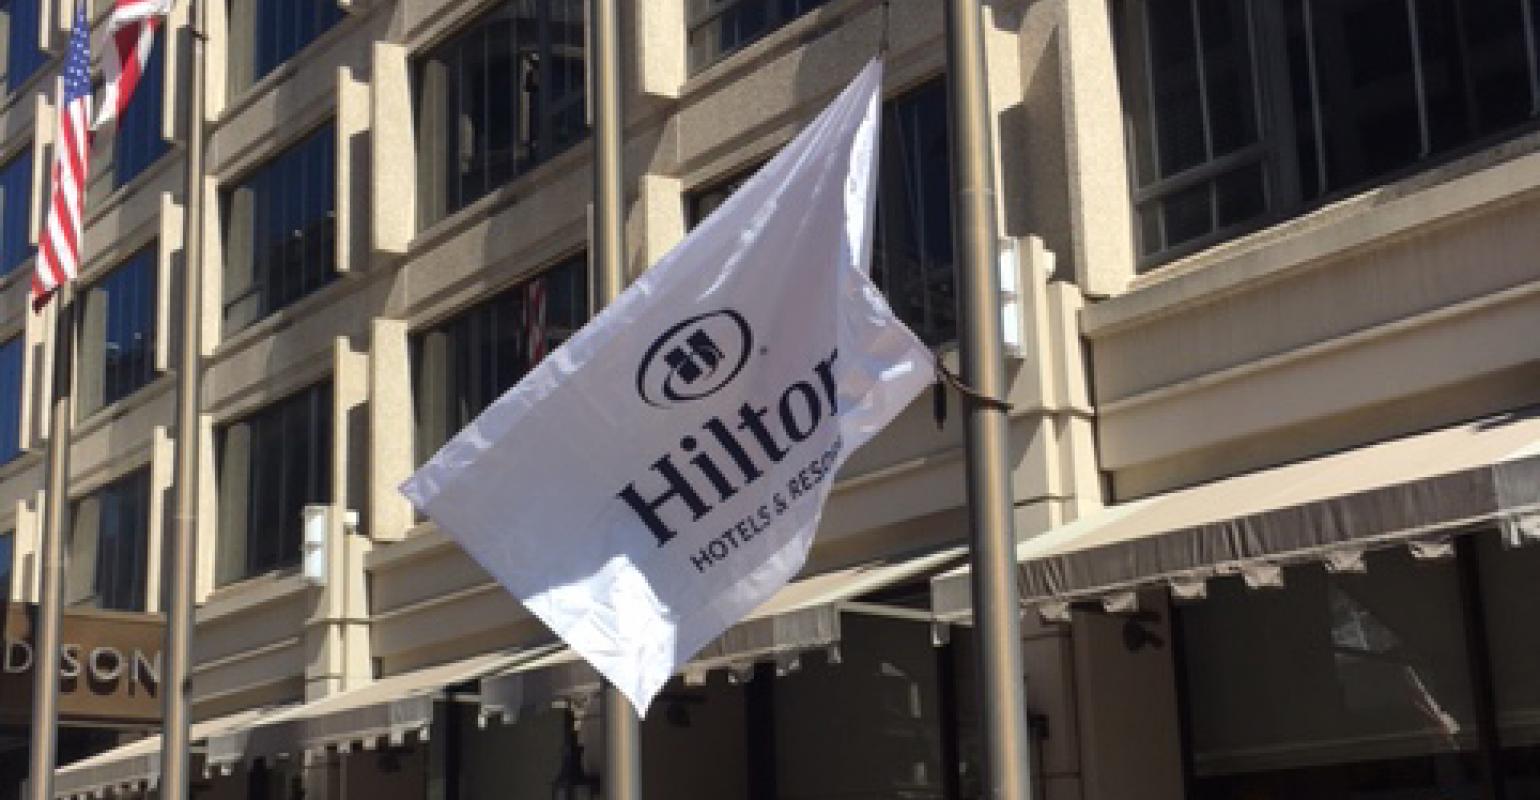 Hilton flag